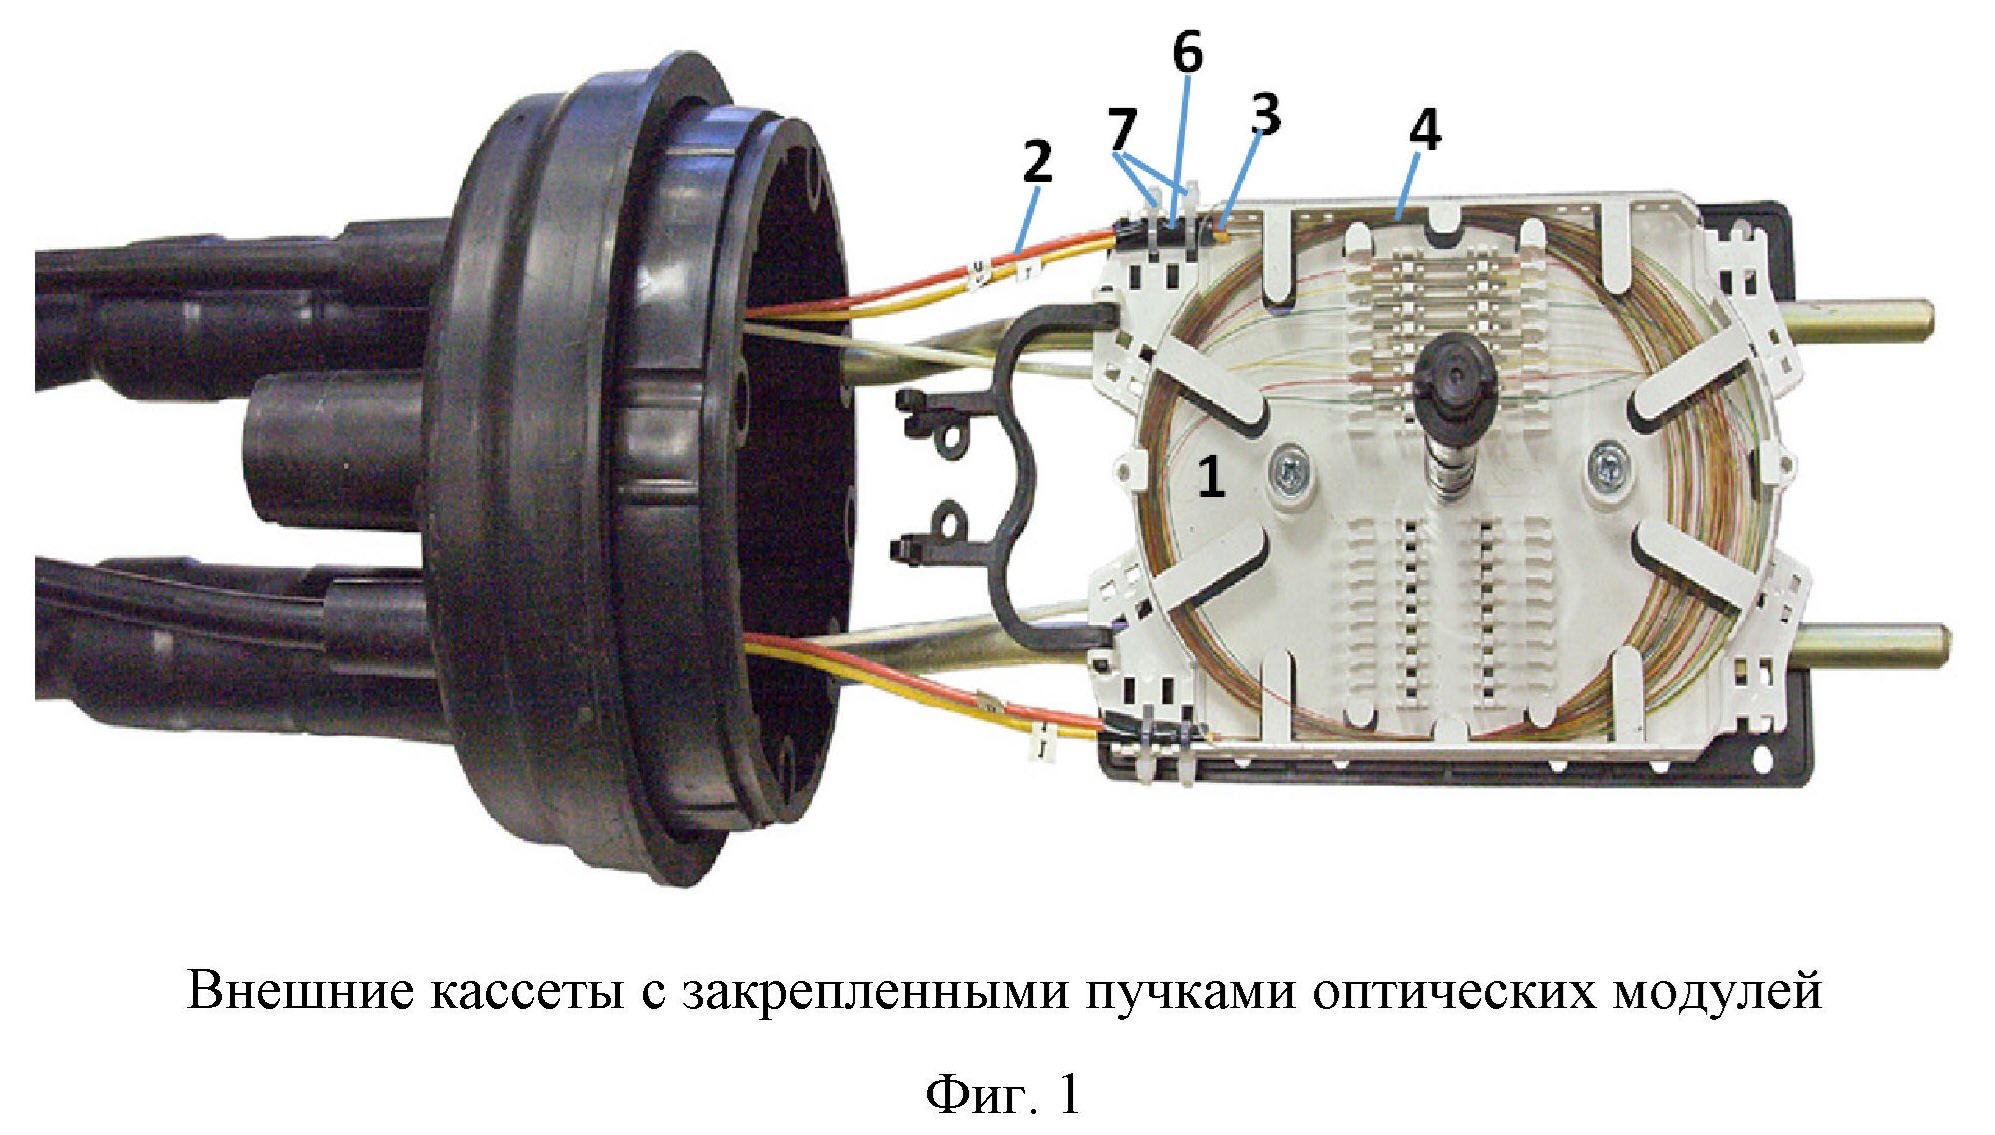 Способ крепления оптических модулей оптического кабеля на кассете муфты при сращивании длин оптического кабеля